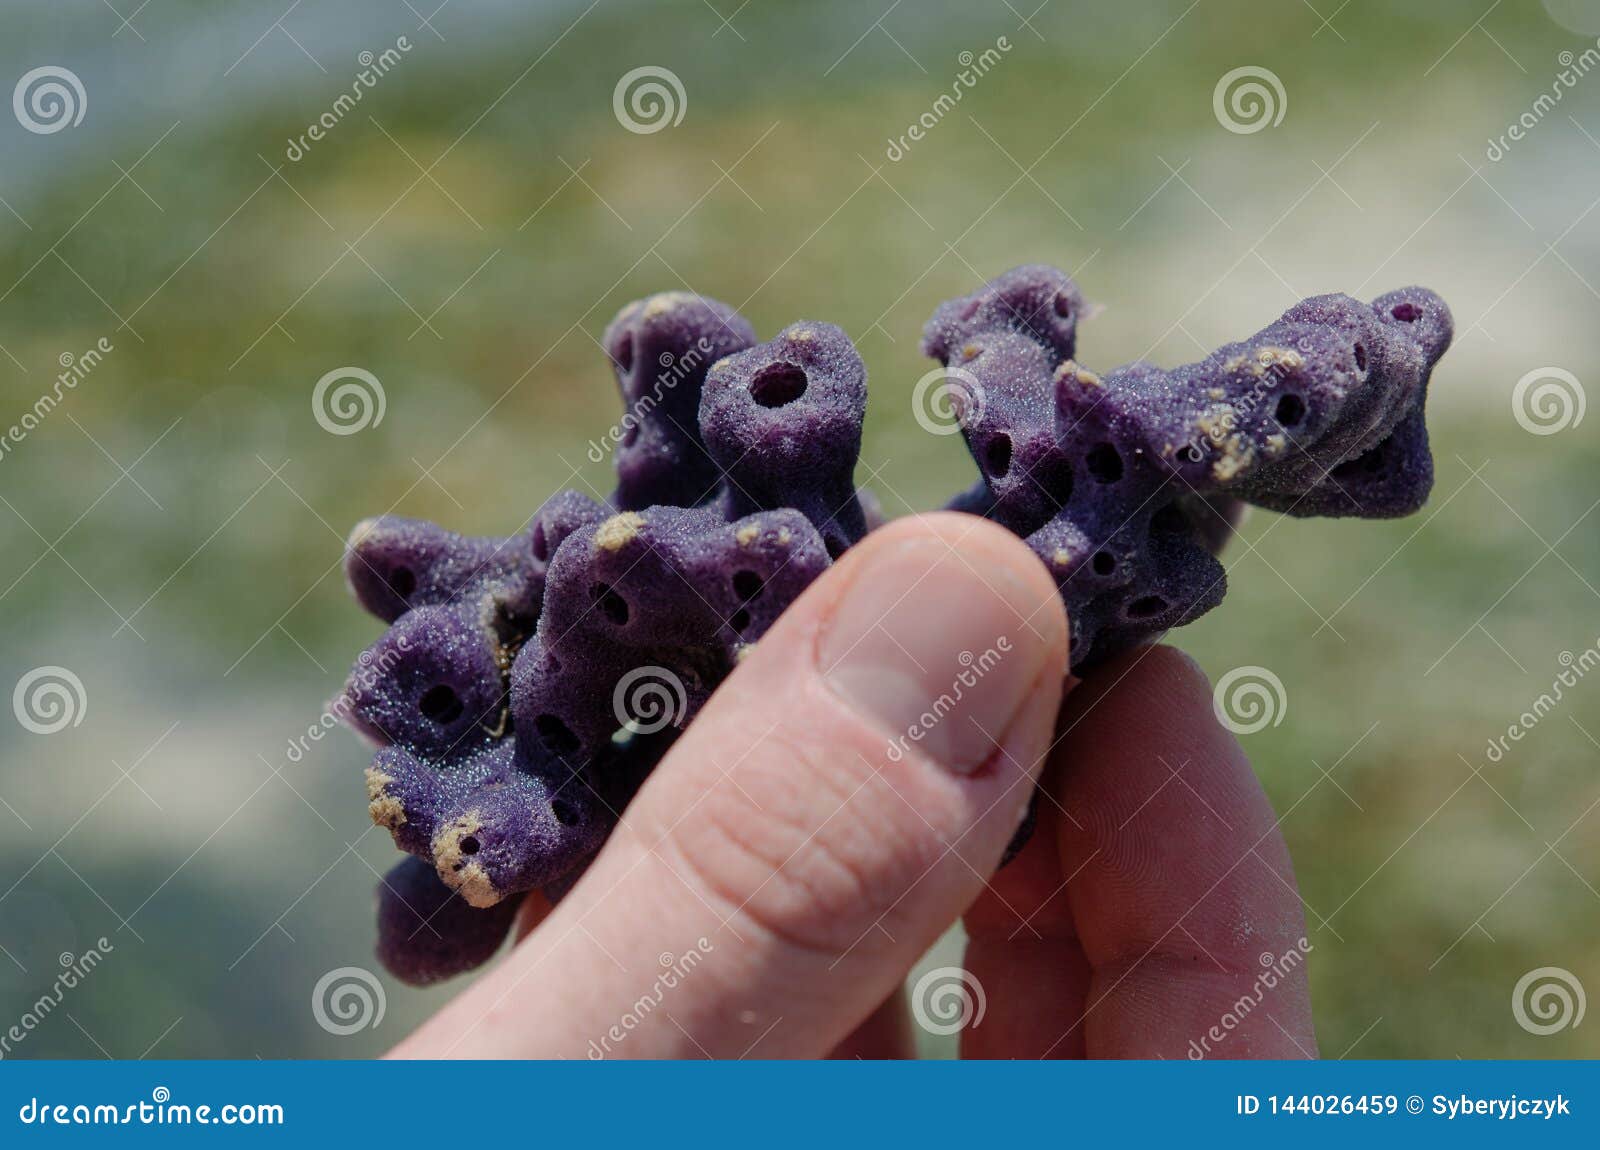 Sponges in Hand Zanzibar, February 2019 Stock Image - Image of jelly,  bearer: 144026459